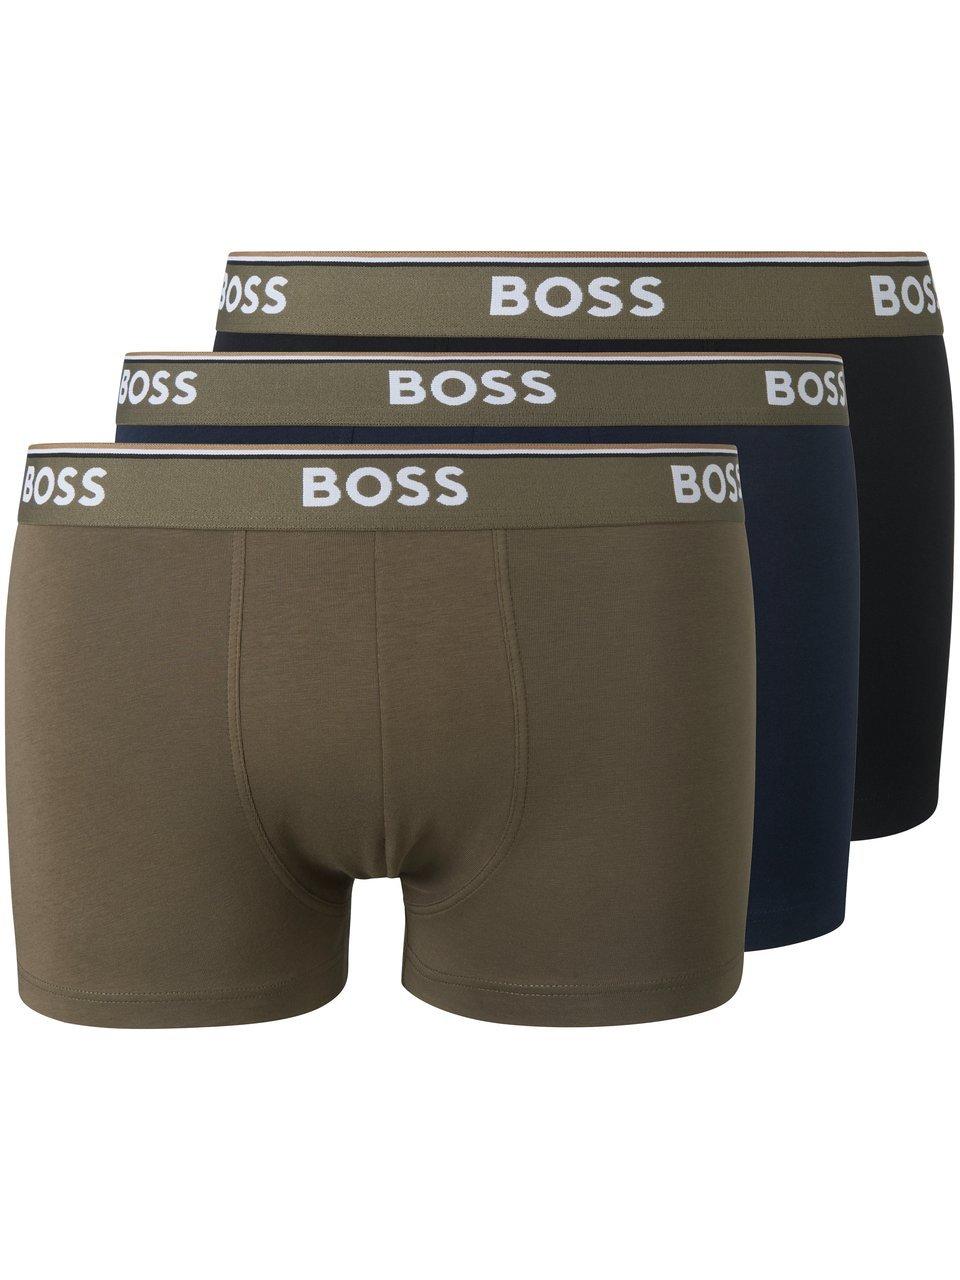 HUGO BOSS Power trunks (3-pack) - heren boxers kort - multicolor (set met verschillende kleuren) - Maat: M